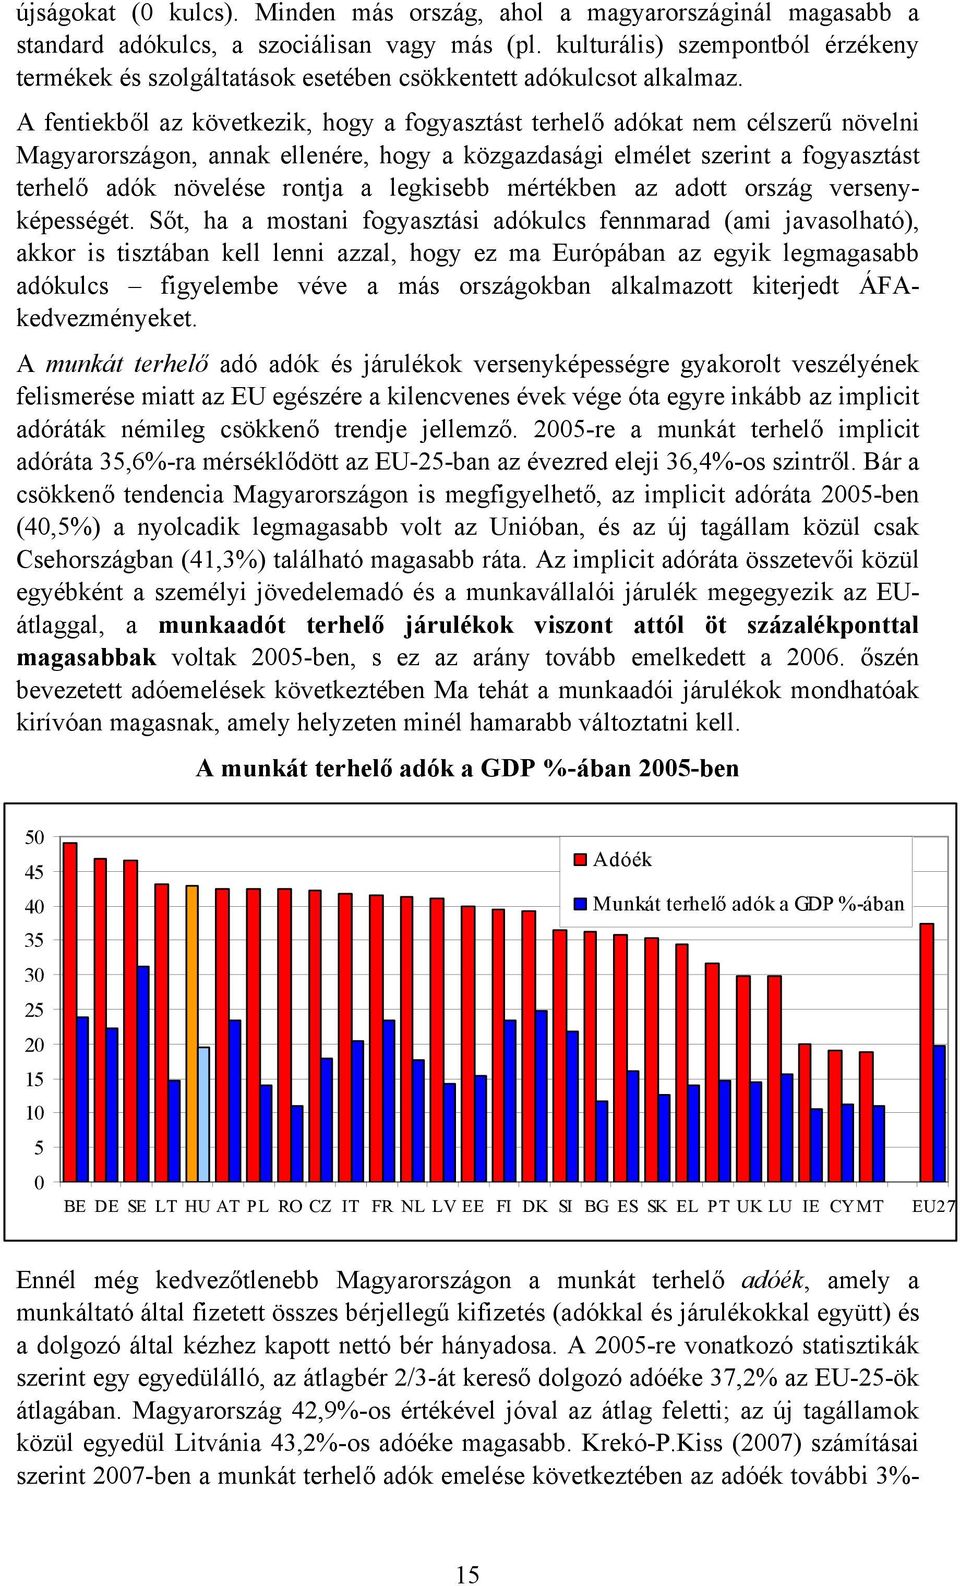 A fentiekből az következik, hogy a fogyasztást terhelő adókat nem célszerű növelni Magyarországon, annak ellenére, hogy a közgazdasági elmélet szerint a fogyasztást terhelő adók növelése rontja a